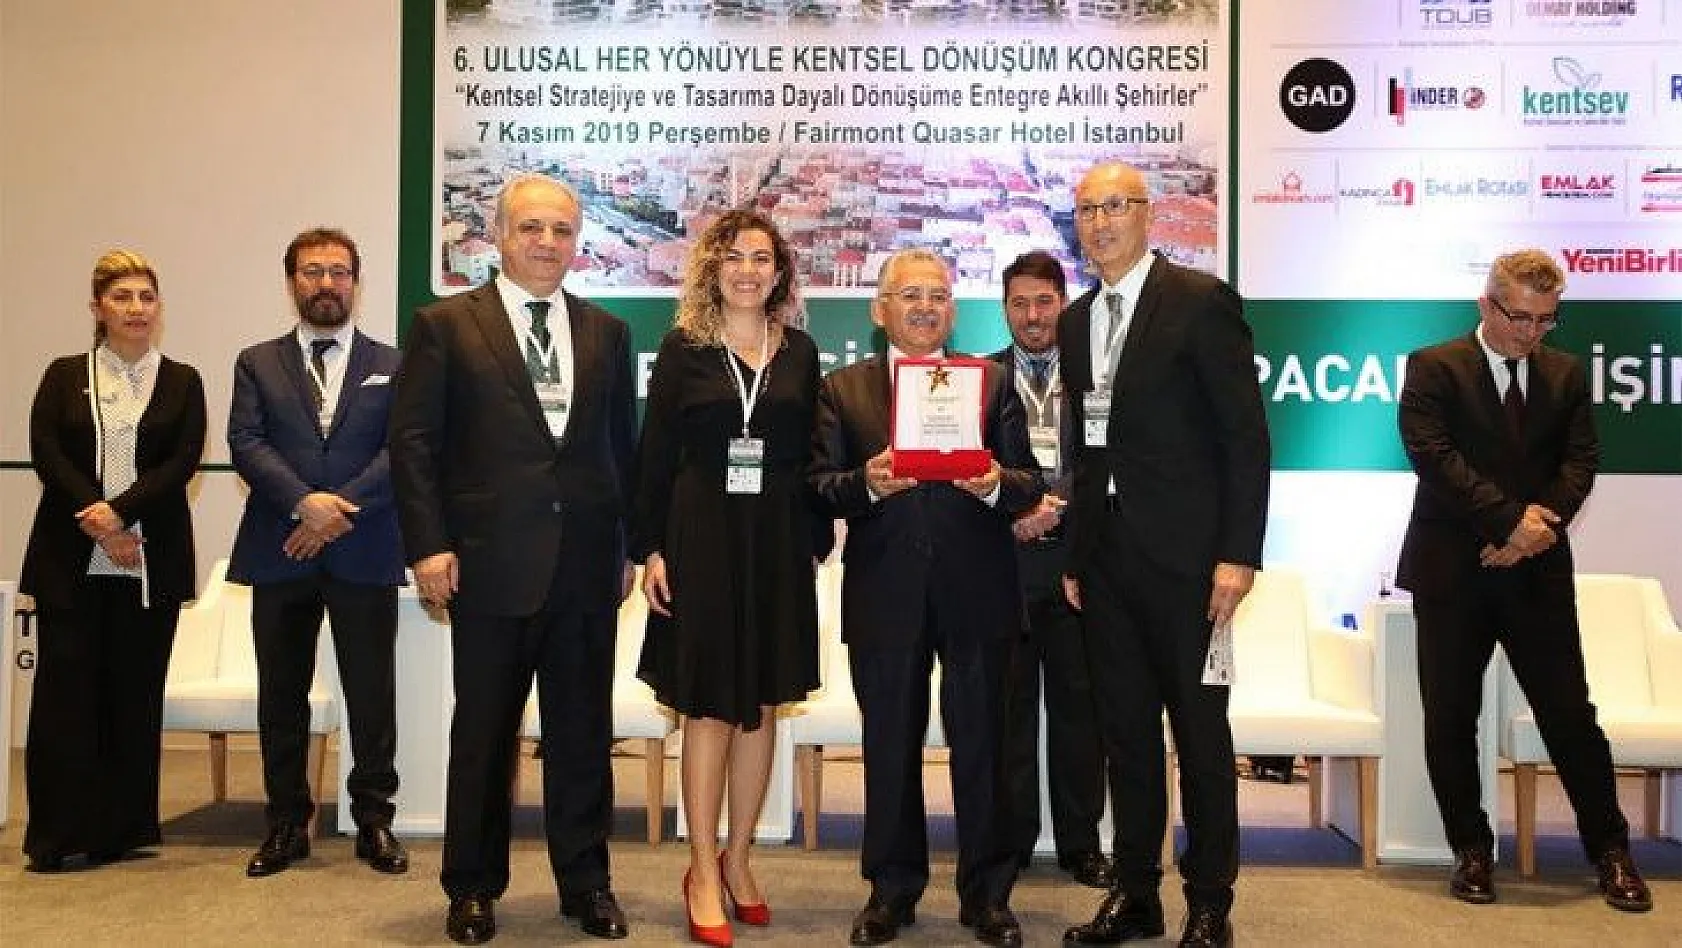 Kayseri Büyükşehir Belediyesi: 3 yılda 20 ödül aldık!